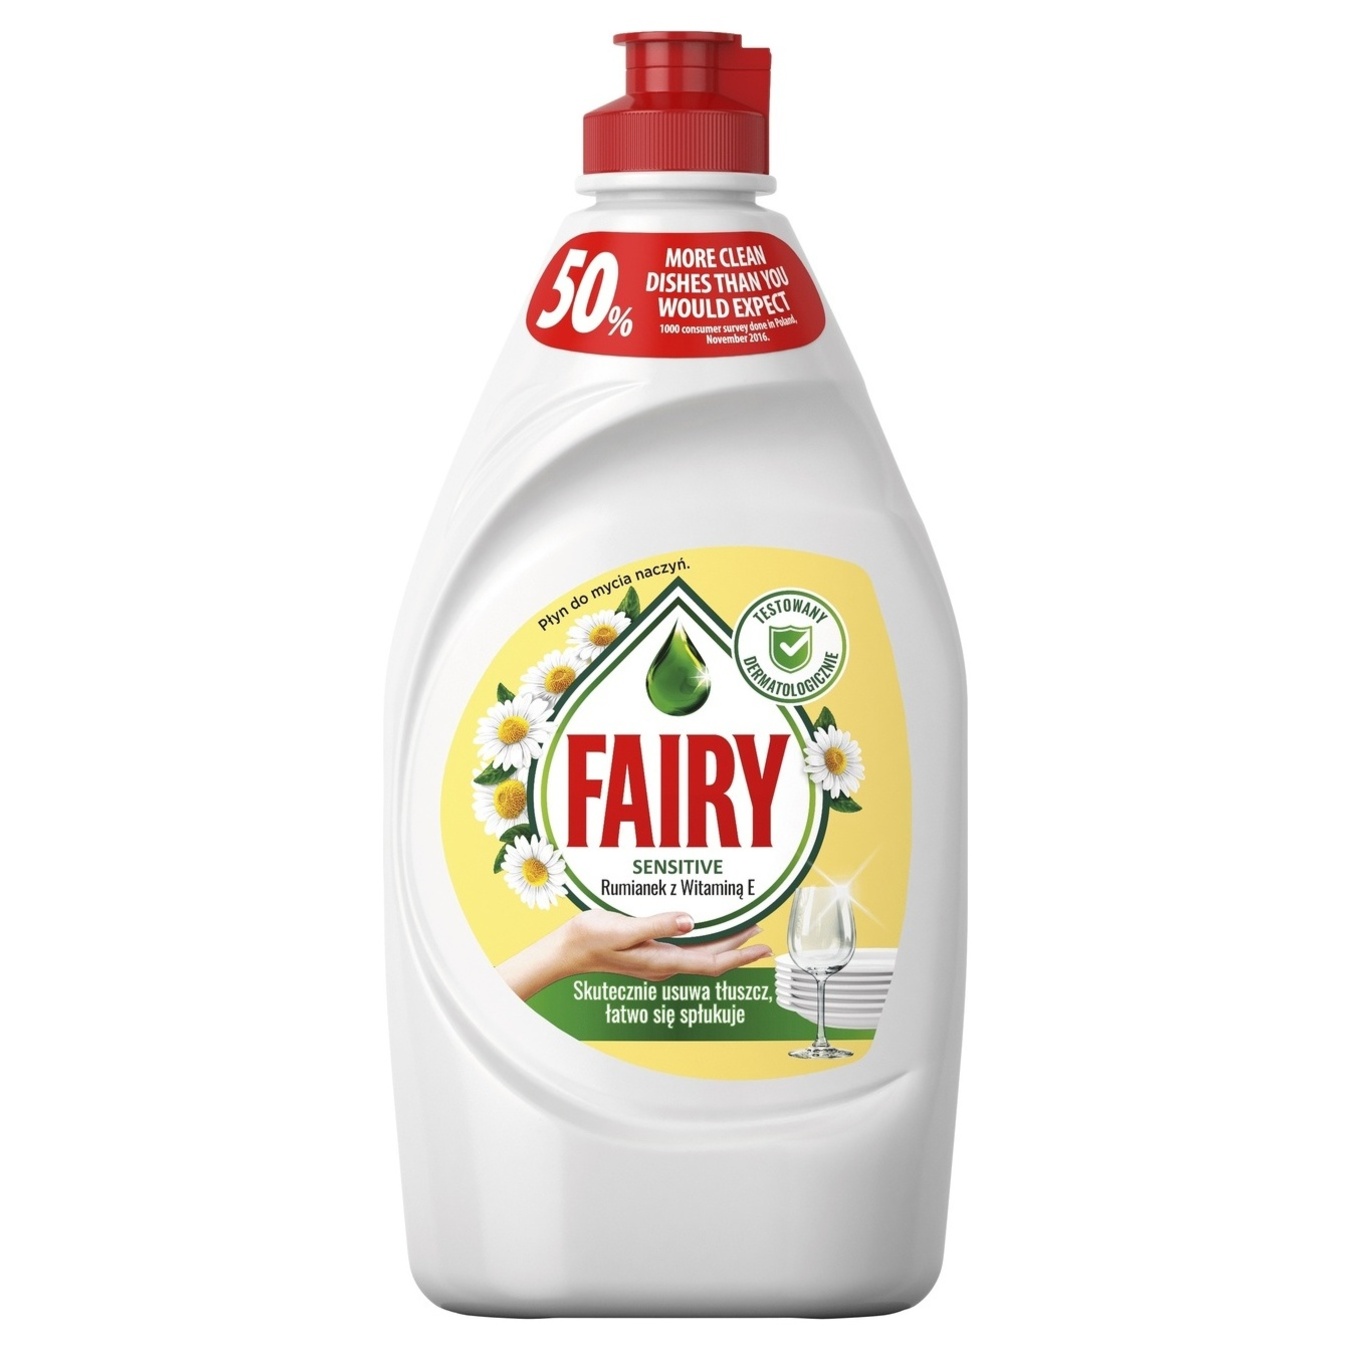 Dishwashing detergent Sensetive chamomile and vitamin E Fairy 450 ml